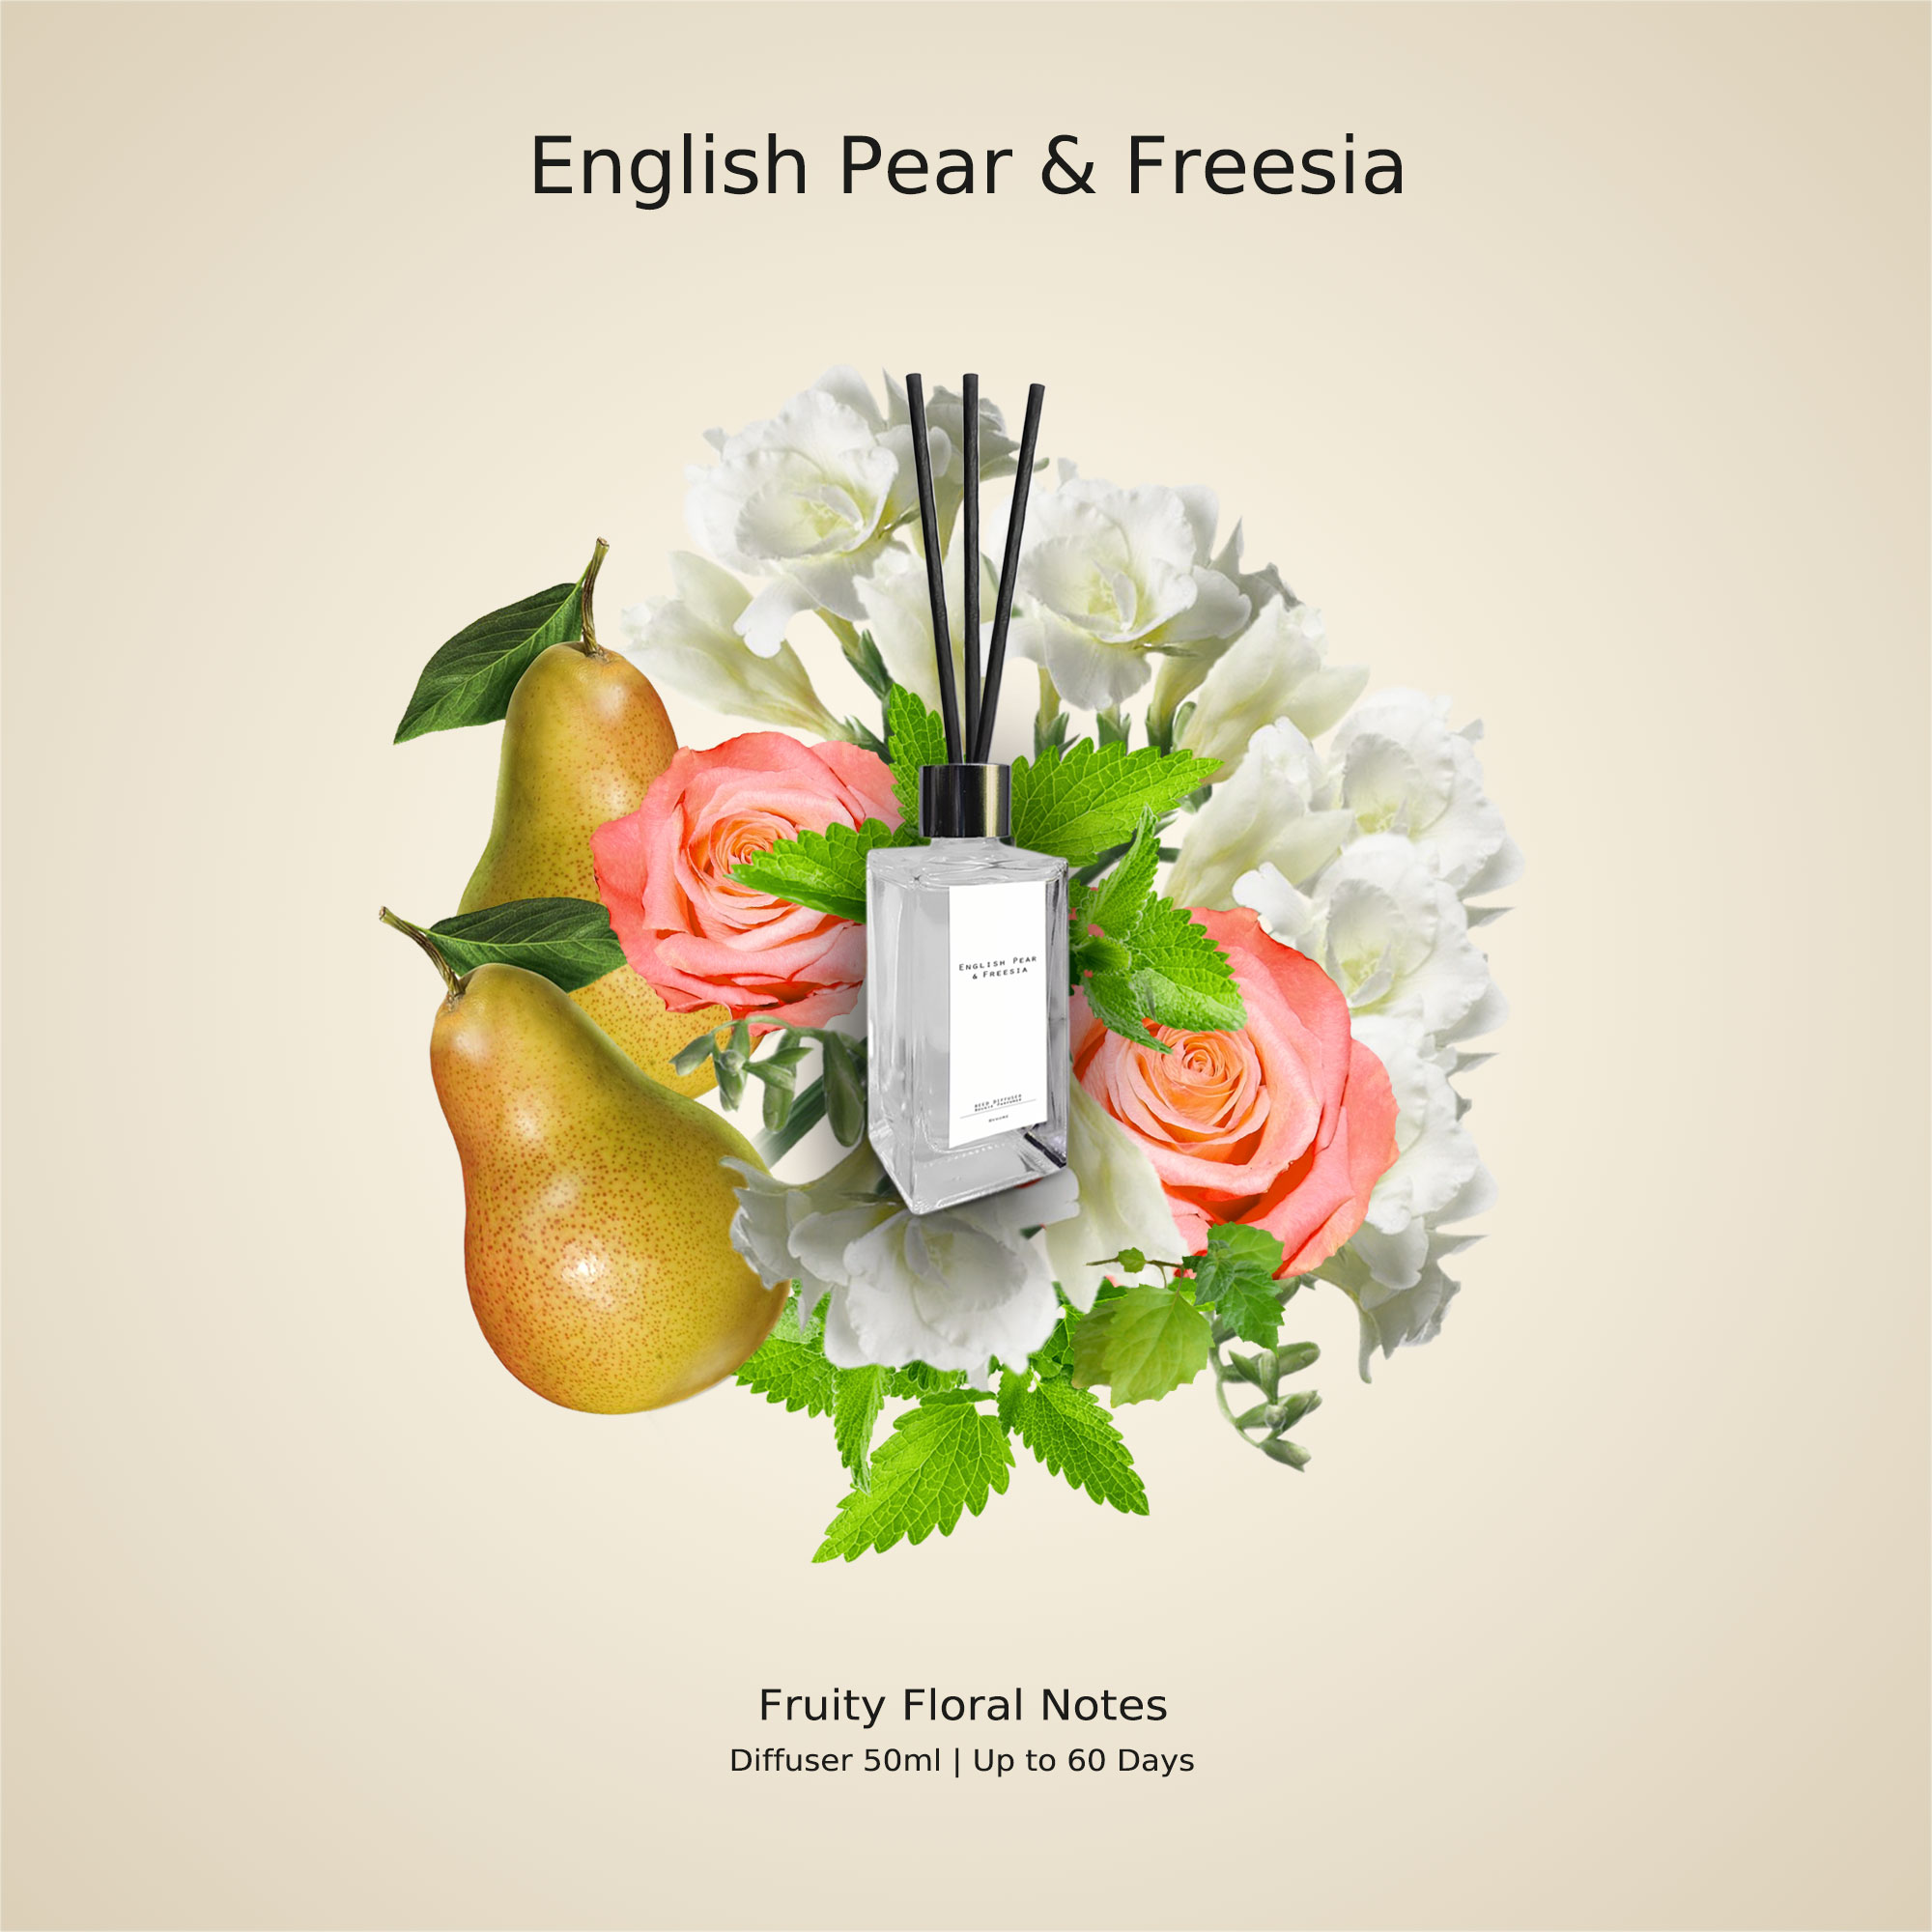 ก้านหอม ปรับอากาศ Diffuser กลิ่น English Pear & Freesia 50ml ฟรี!! ก้านไม้กระจายกลิ่น (ไม่มีกล่อง) (no box)